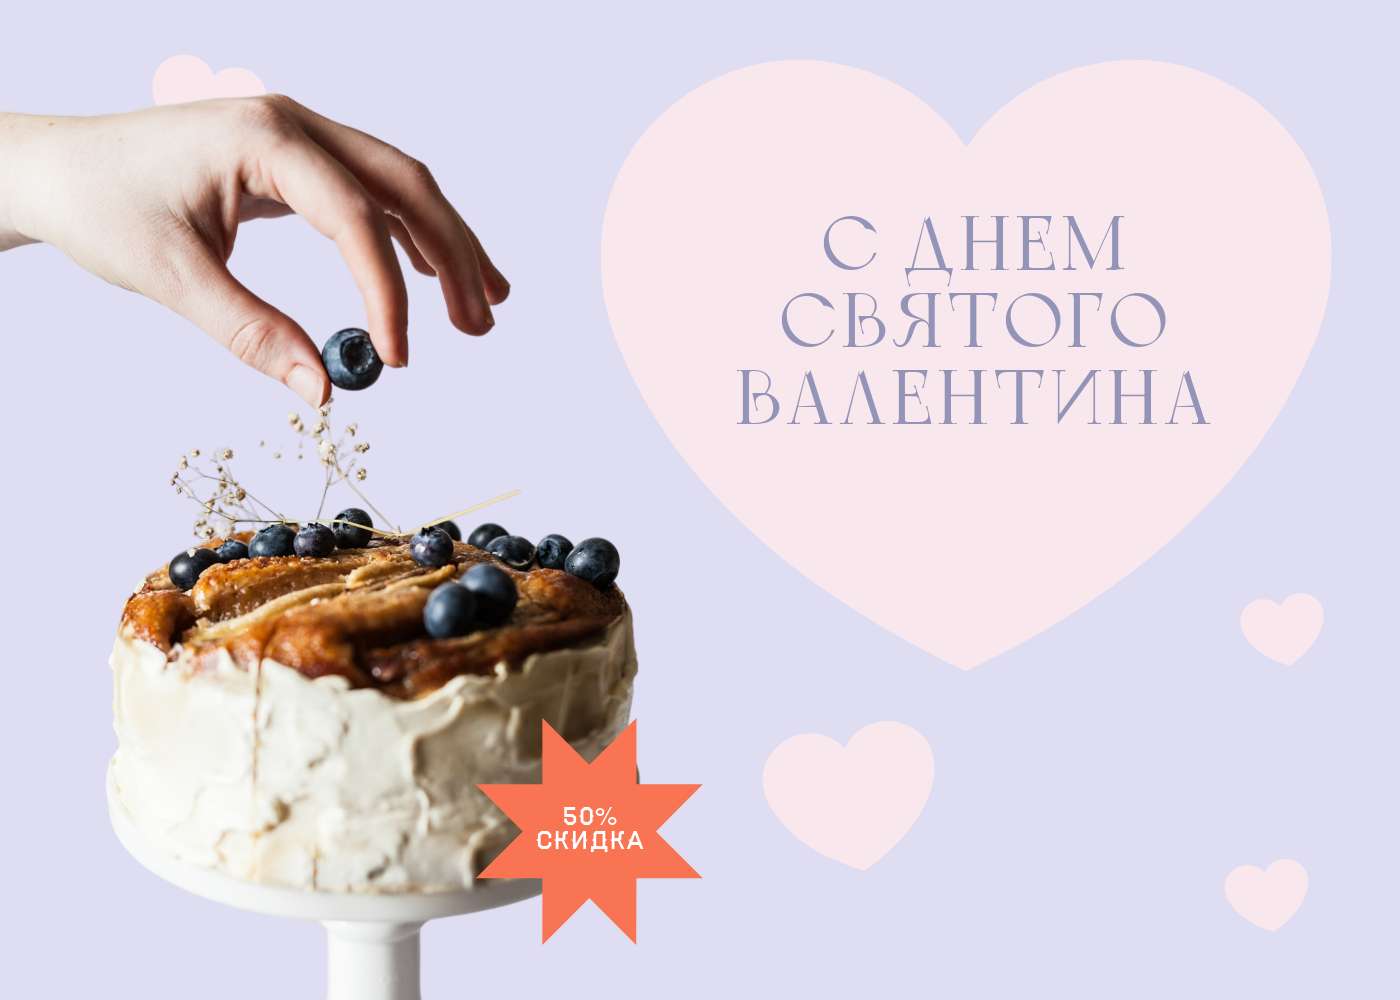 Симпатичный готовый пост для кондитерской с акцией в день святого Валентина и невероятным карамельным тортом